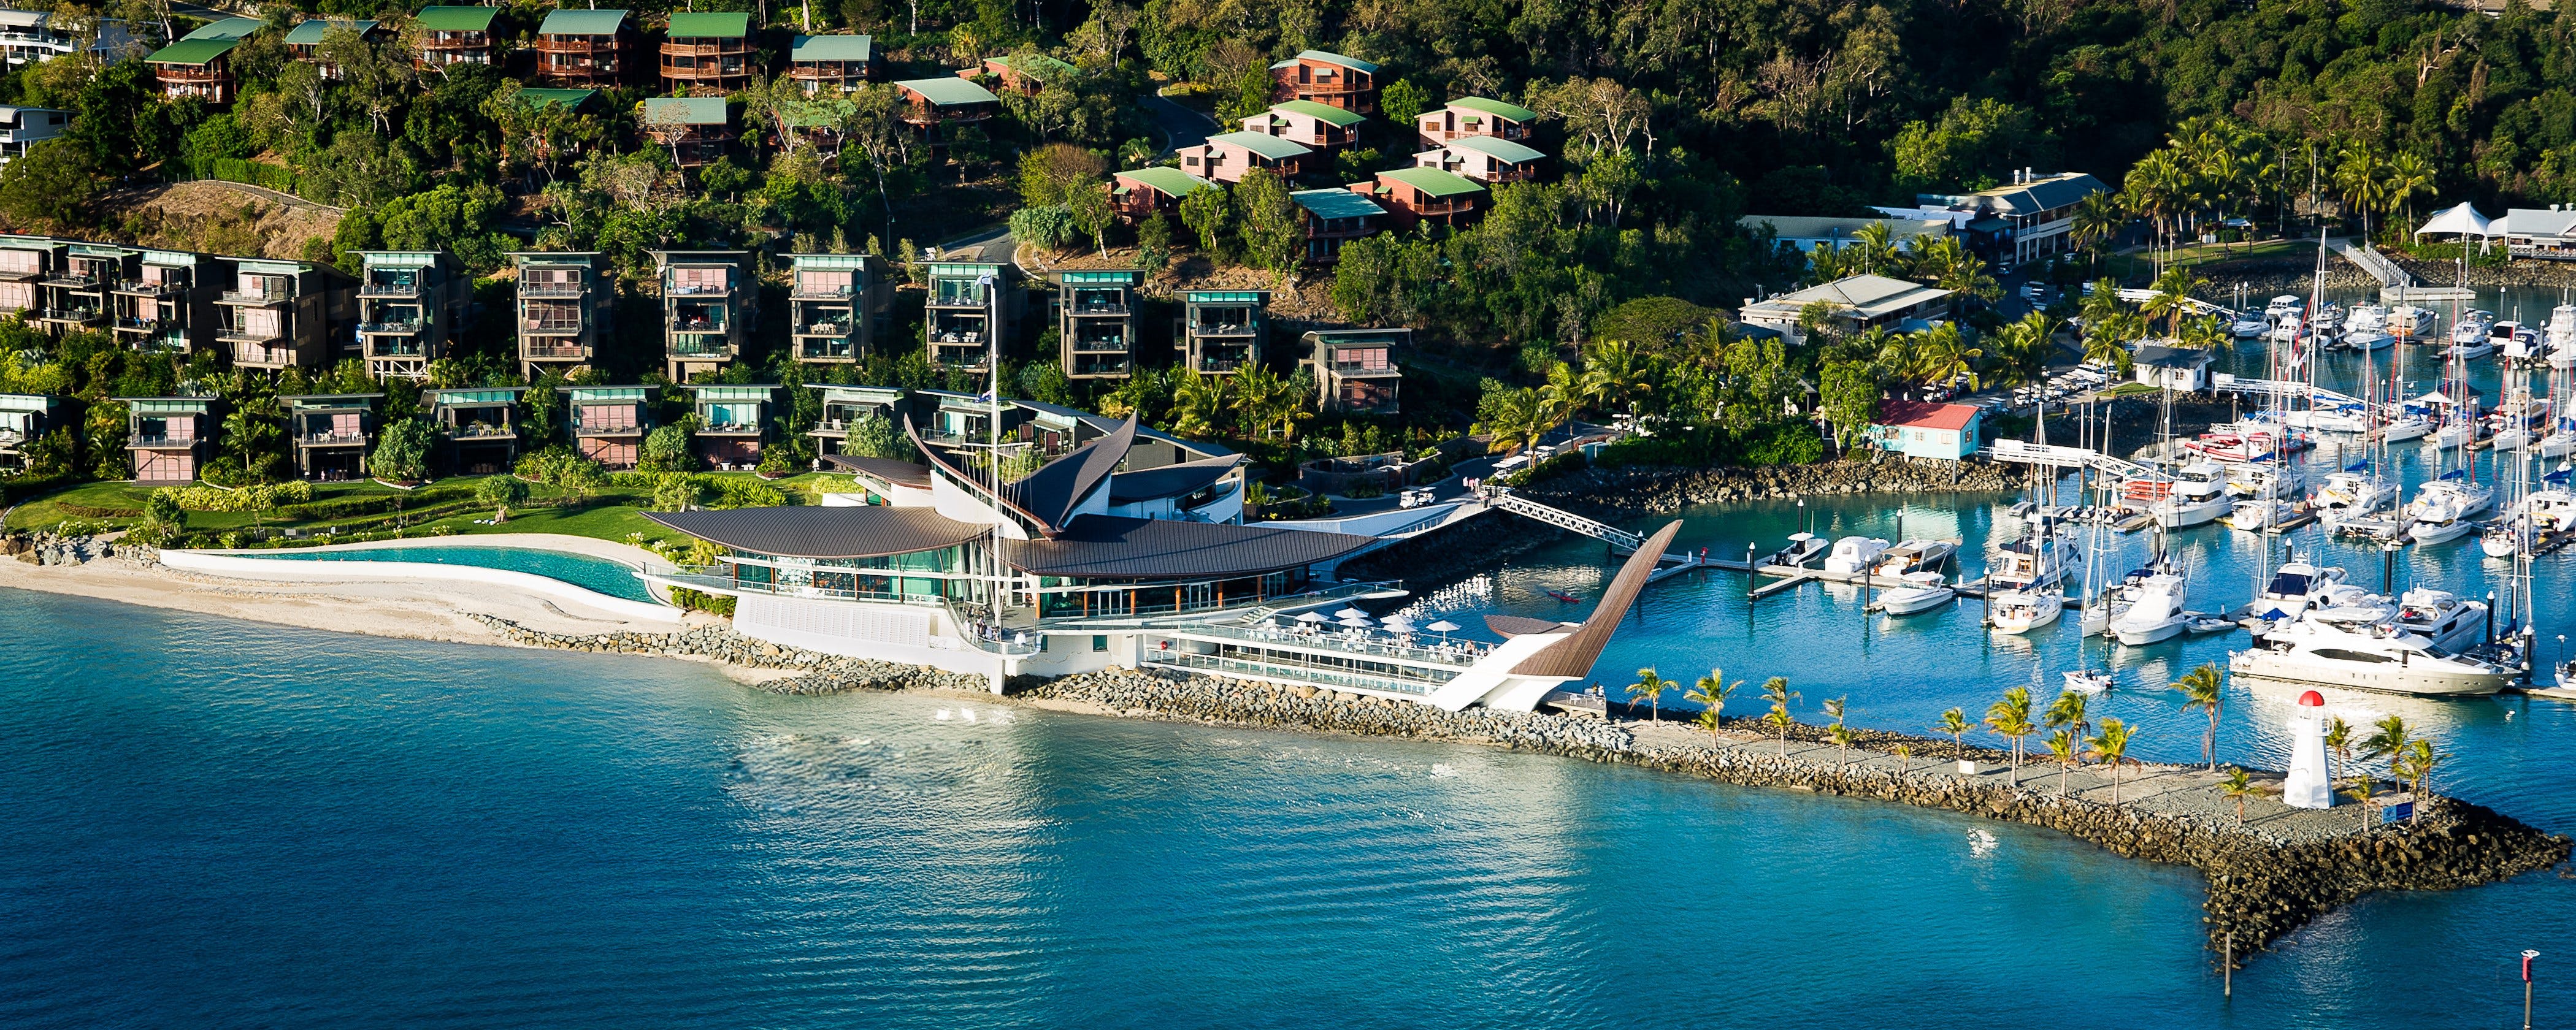 Hamilton Island Yacht Club - Accommodation Brunswick Heads